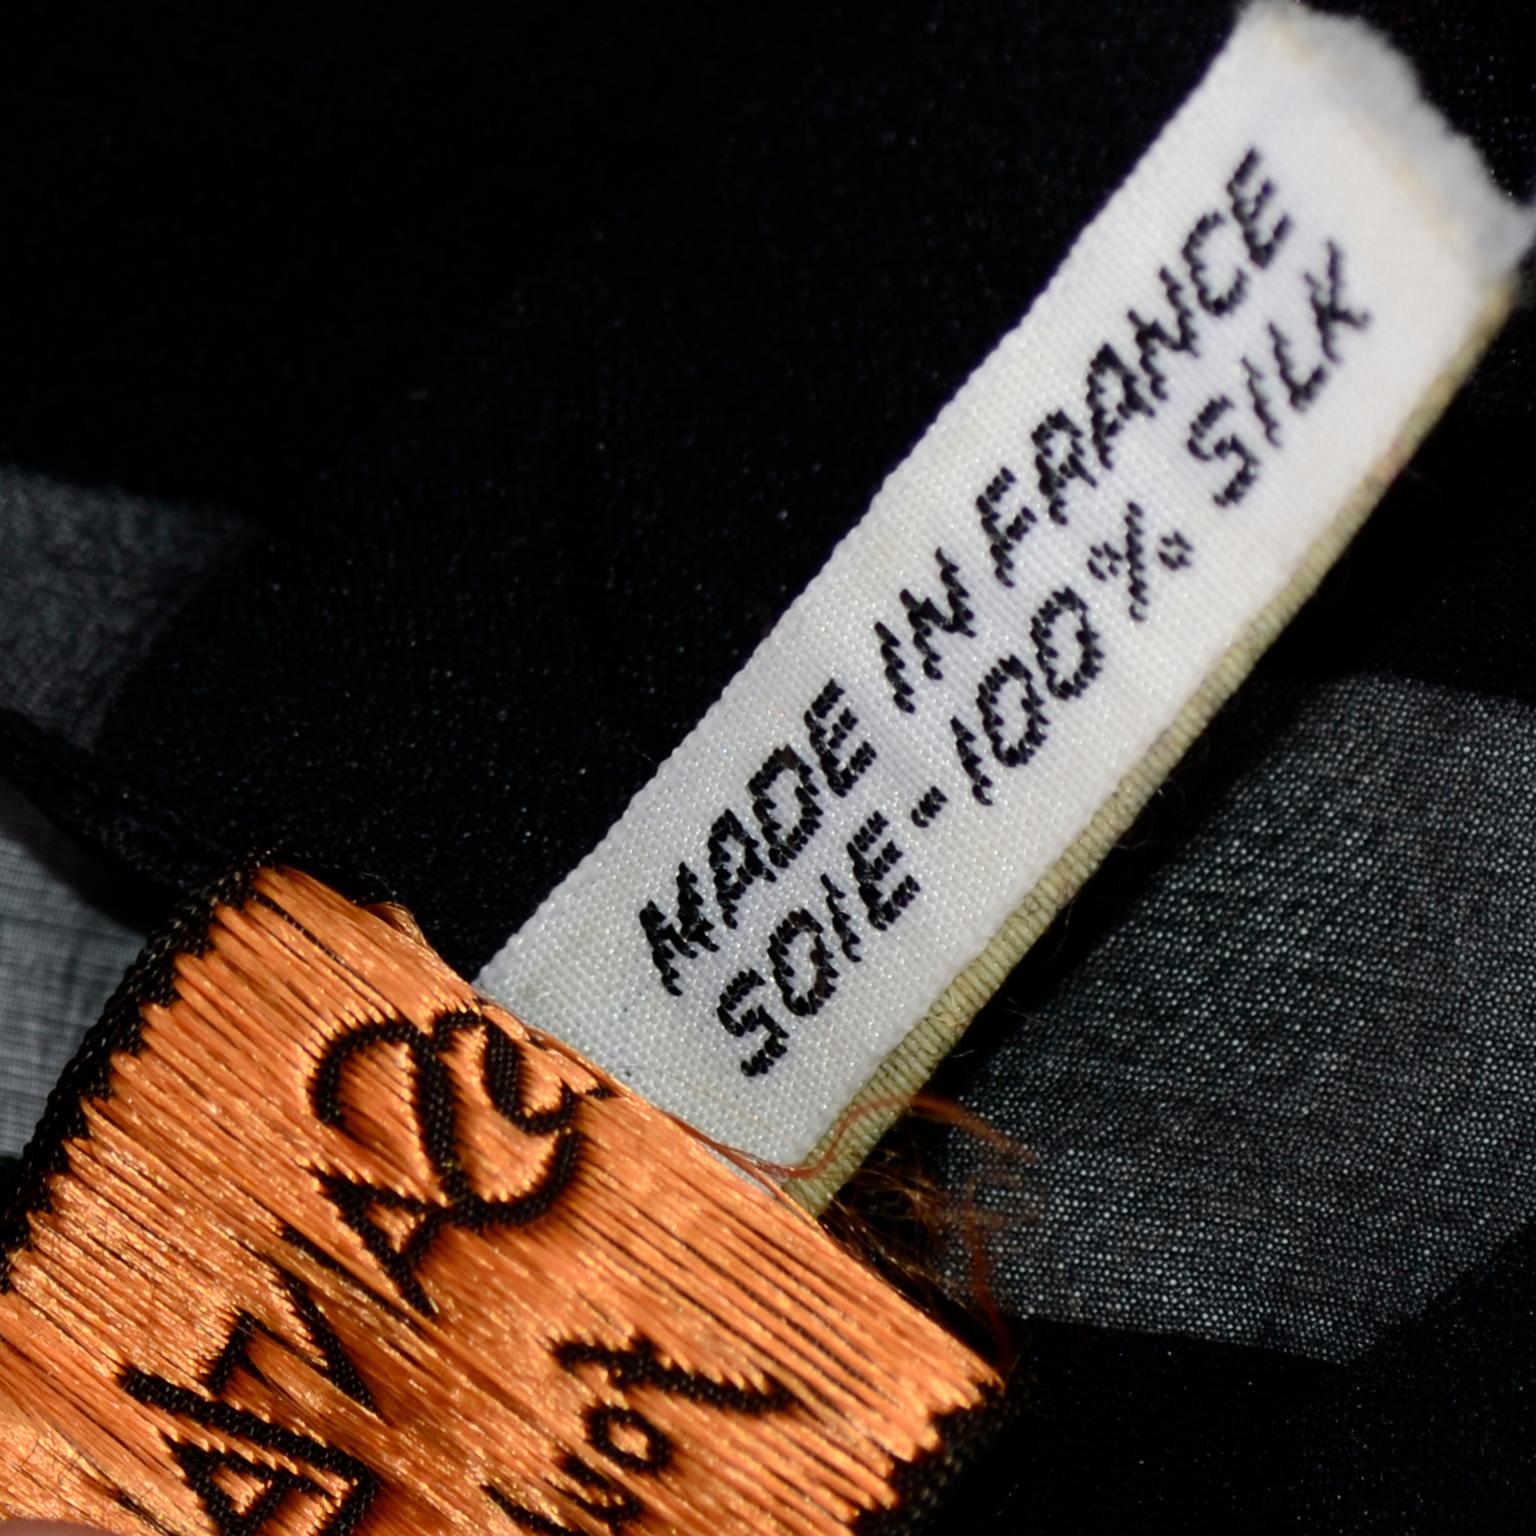 Yves Saint Laurent Foulards Silk Oversized Large Black Sheer Scarf or Shawl Wrap 2